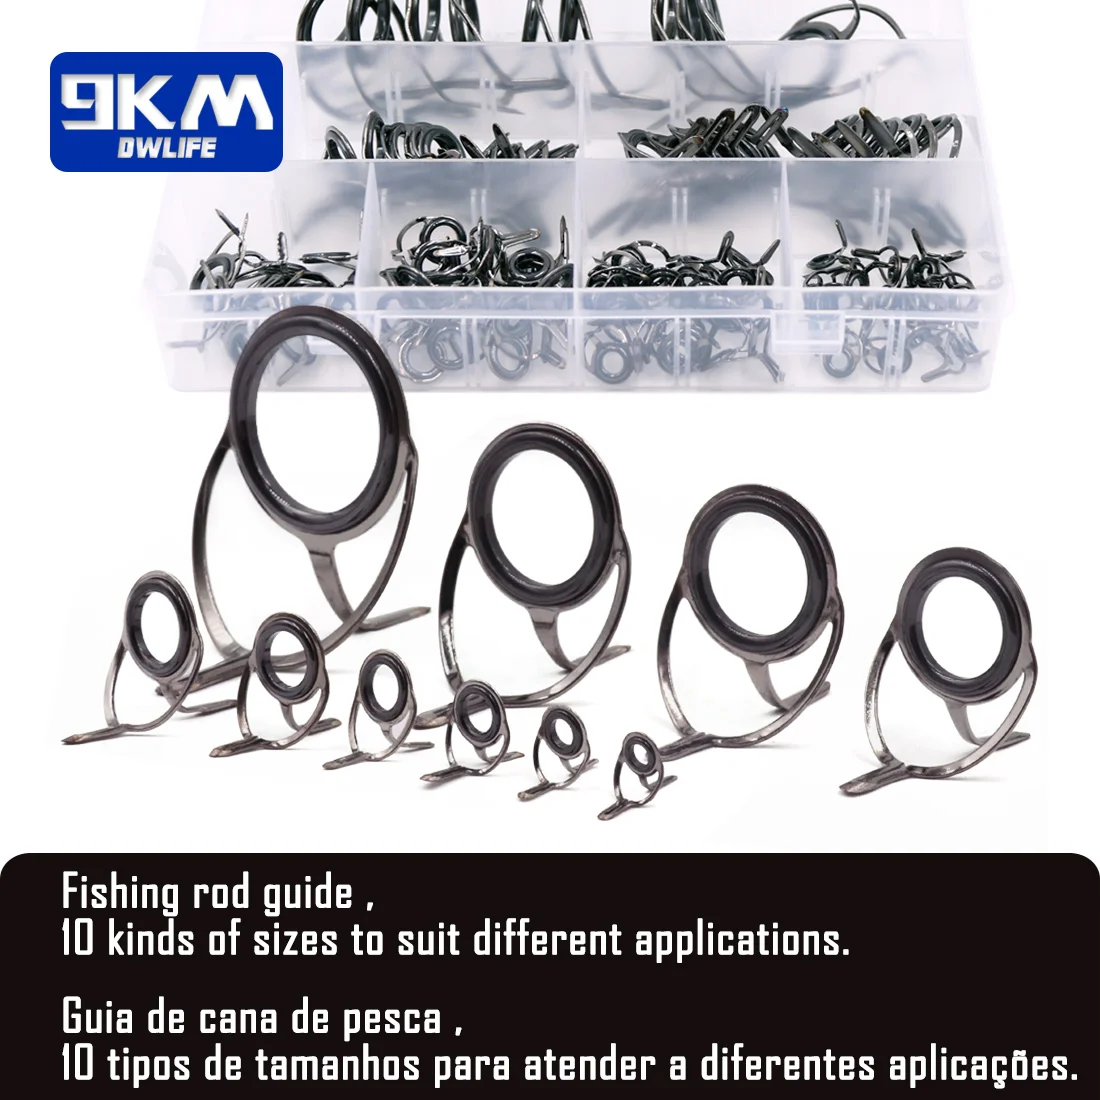 Fishing rod tip repair kit Ceramics rings Fishing rod guides